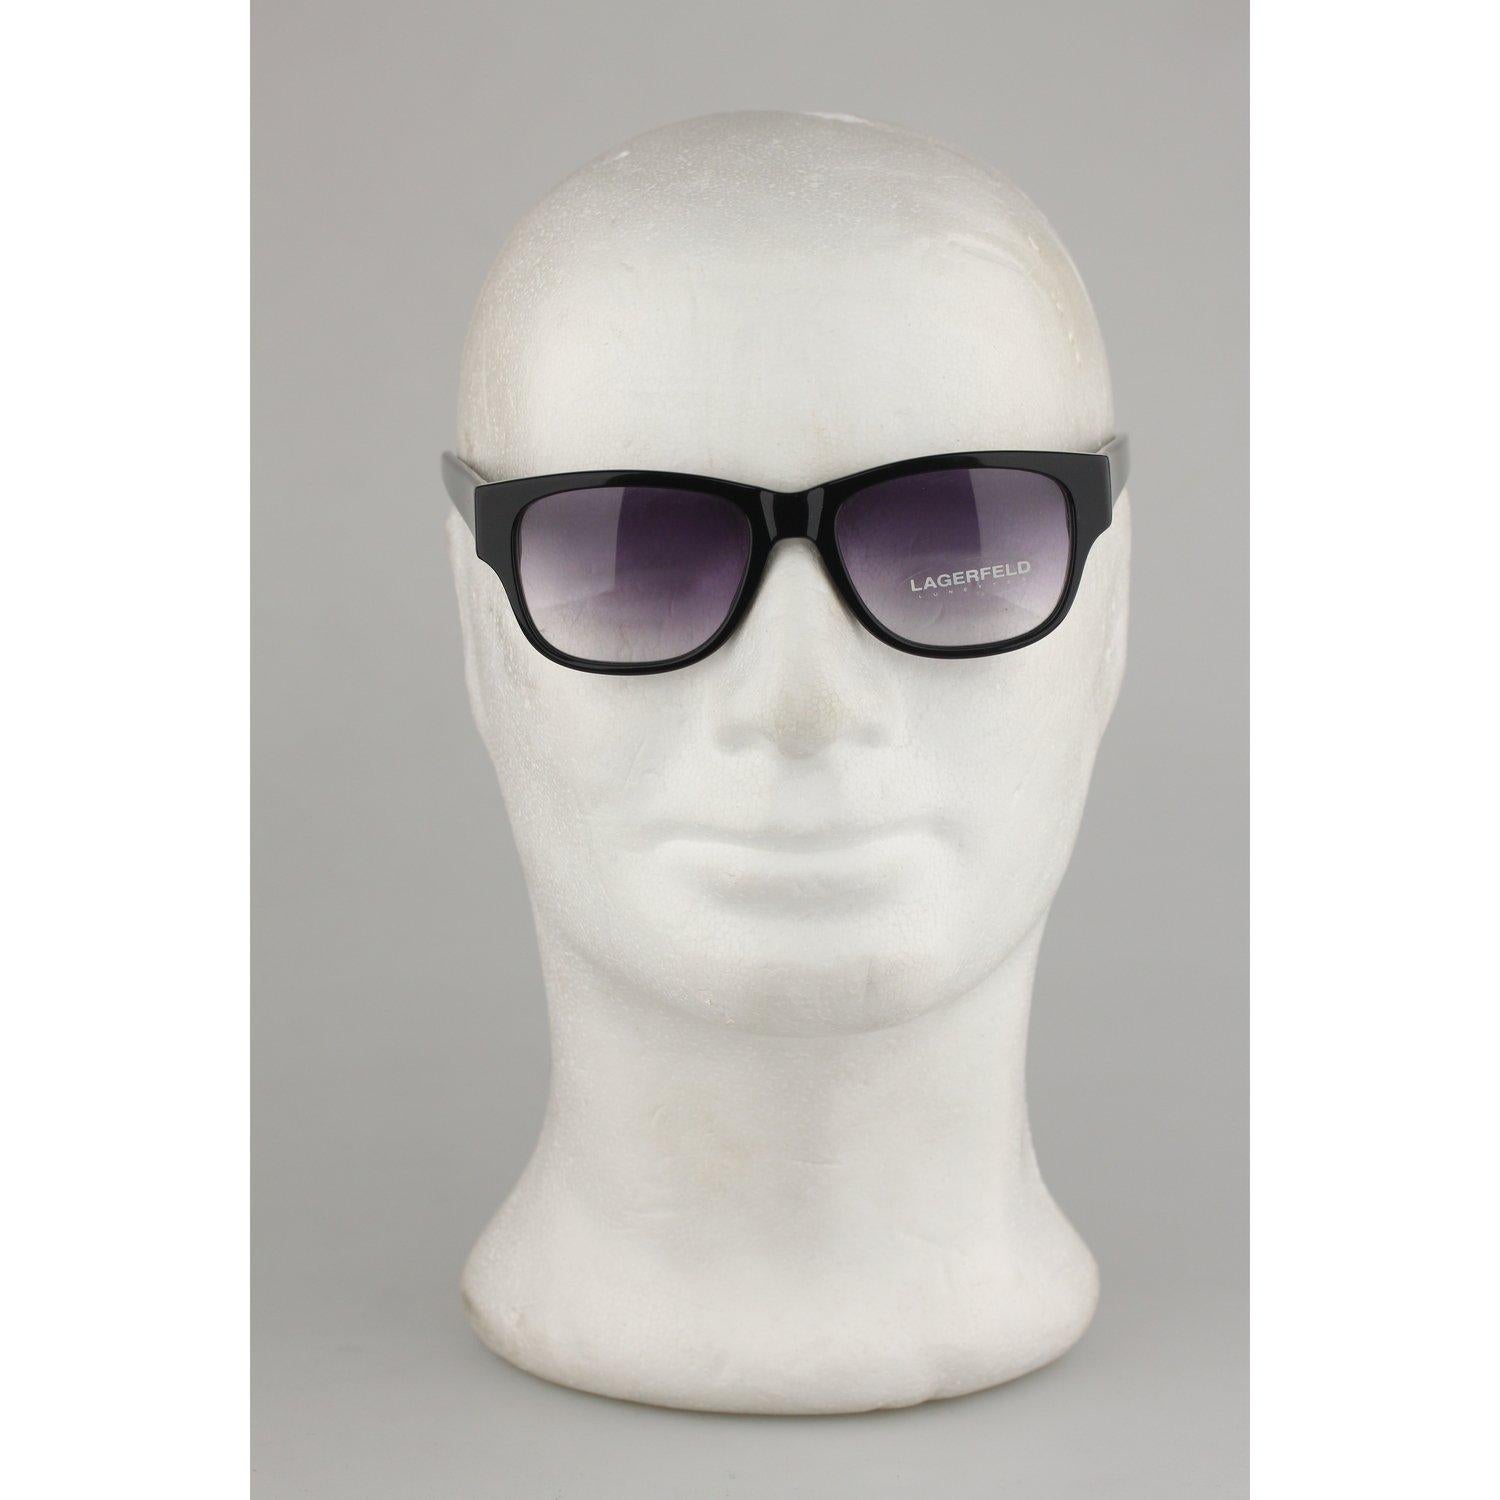 Black Karl Lagerfeld Vintage Sunglasses Mod 4221 01